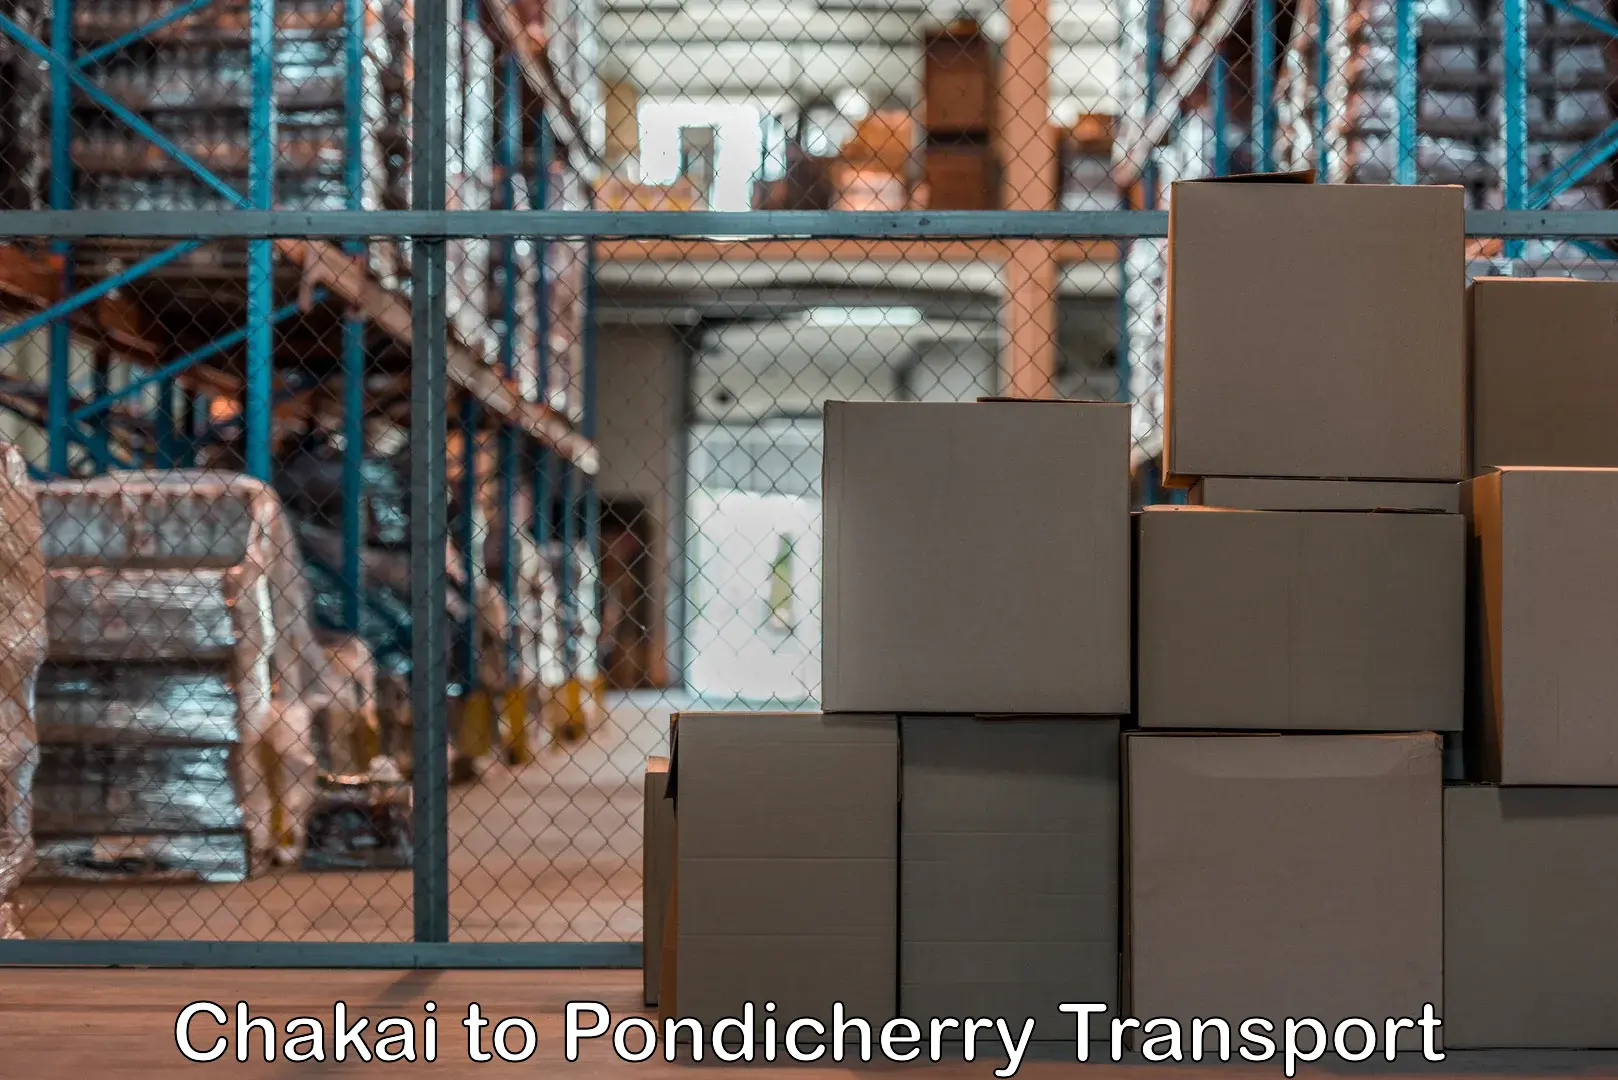 Cargo transport services Chakai to Pondicherry